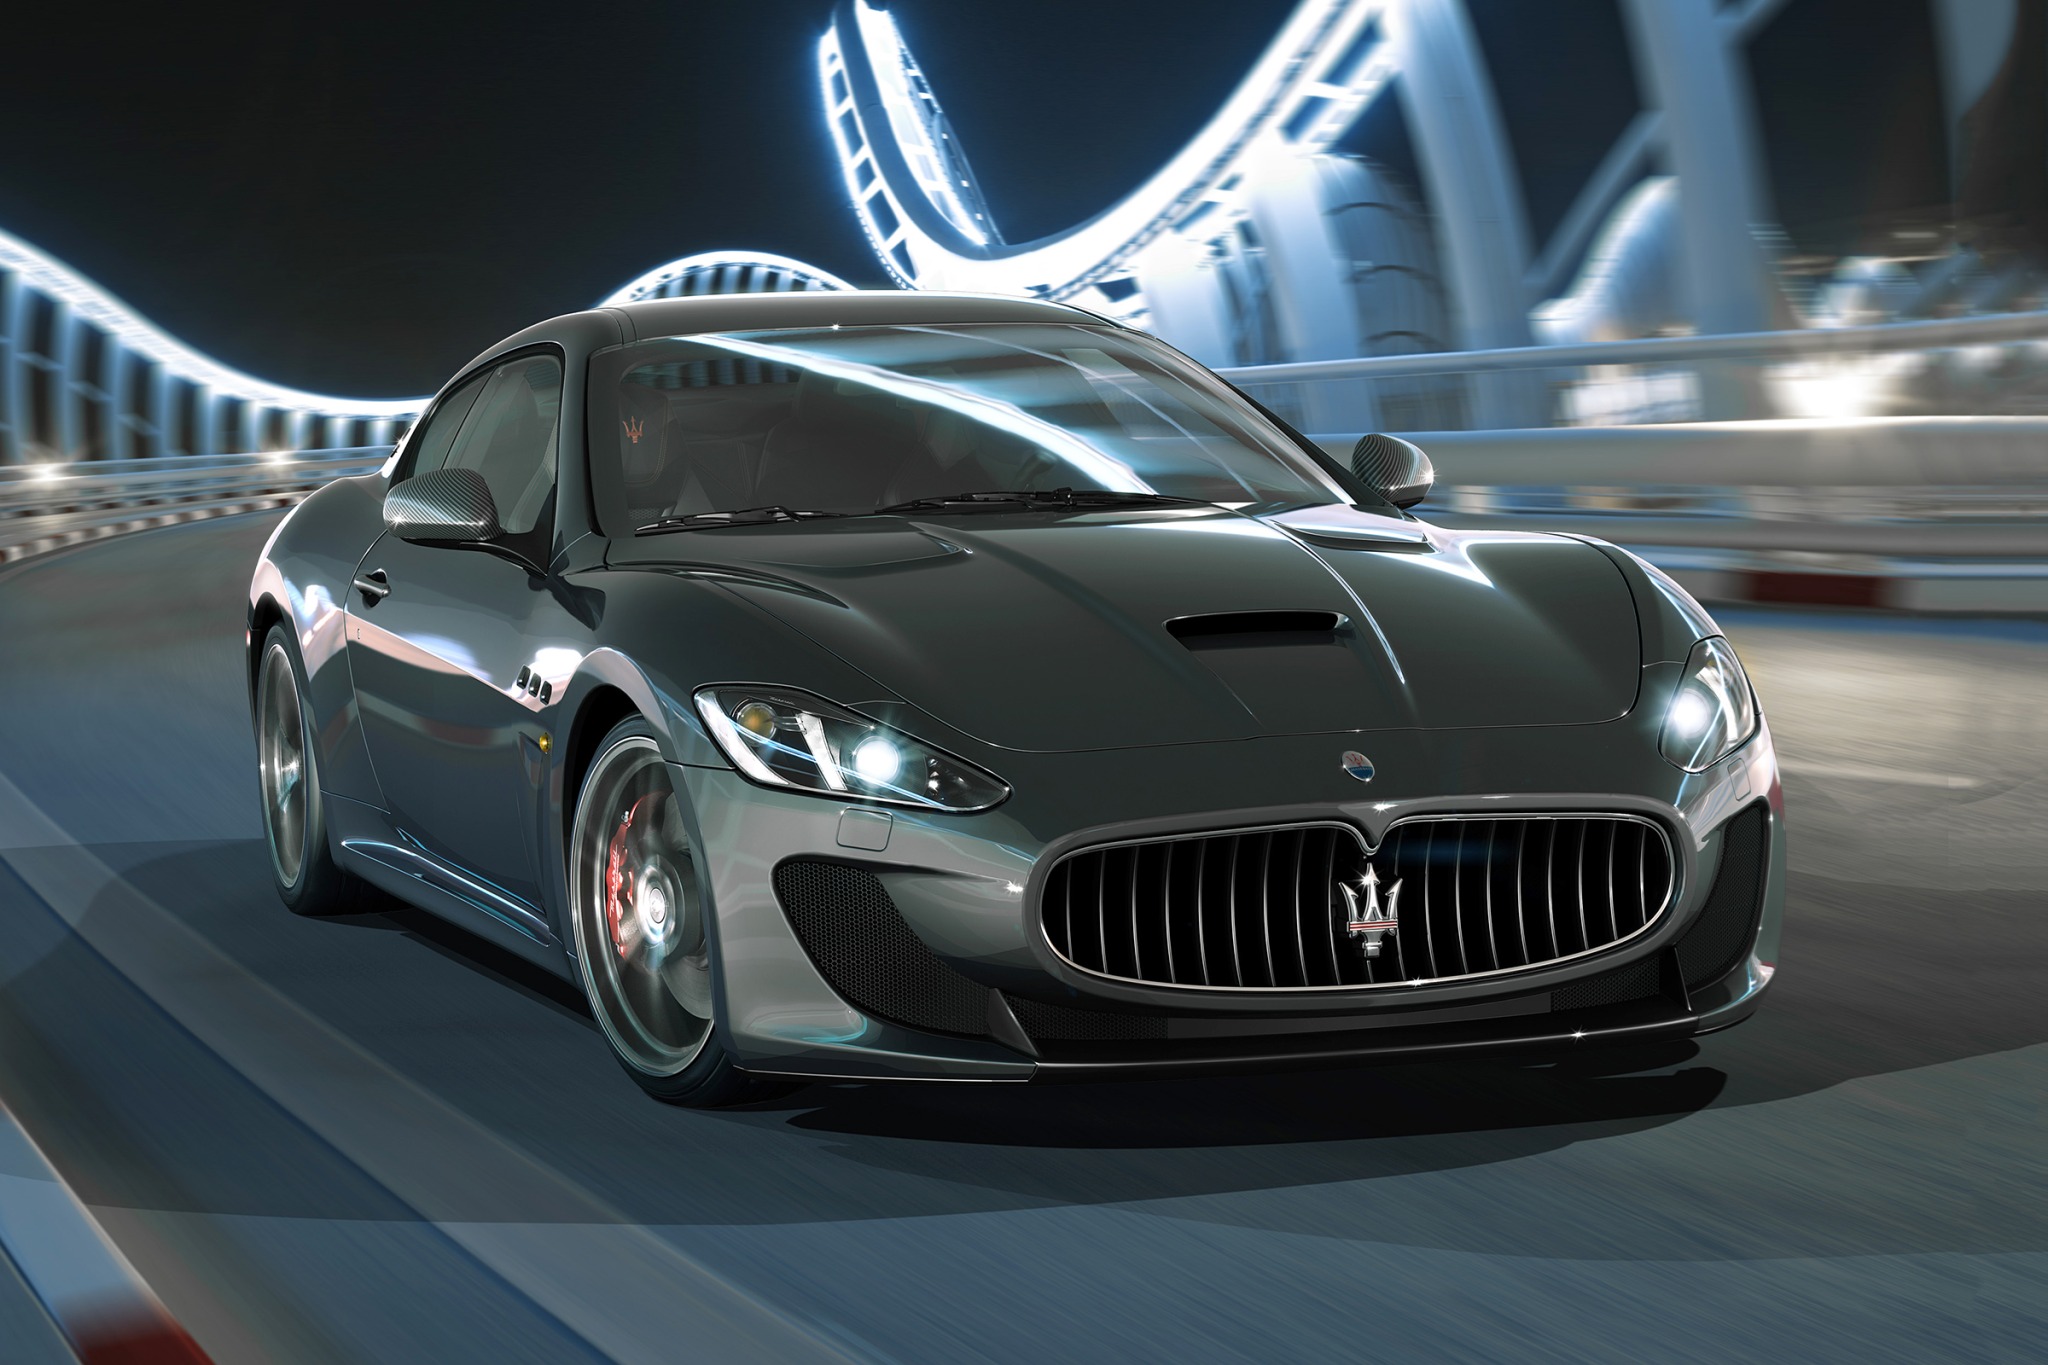 2017 Maserati GranTurismo VIN Number Search - AutoDetective